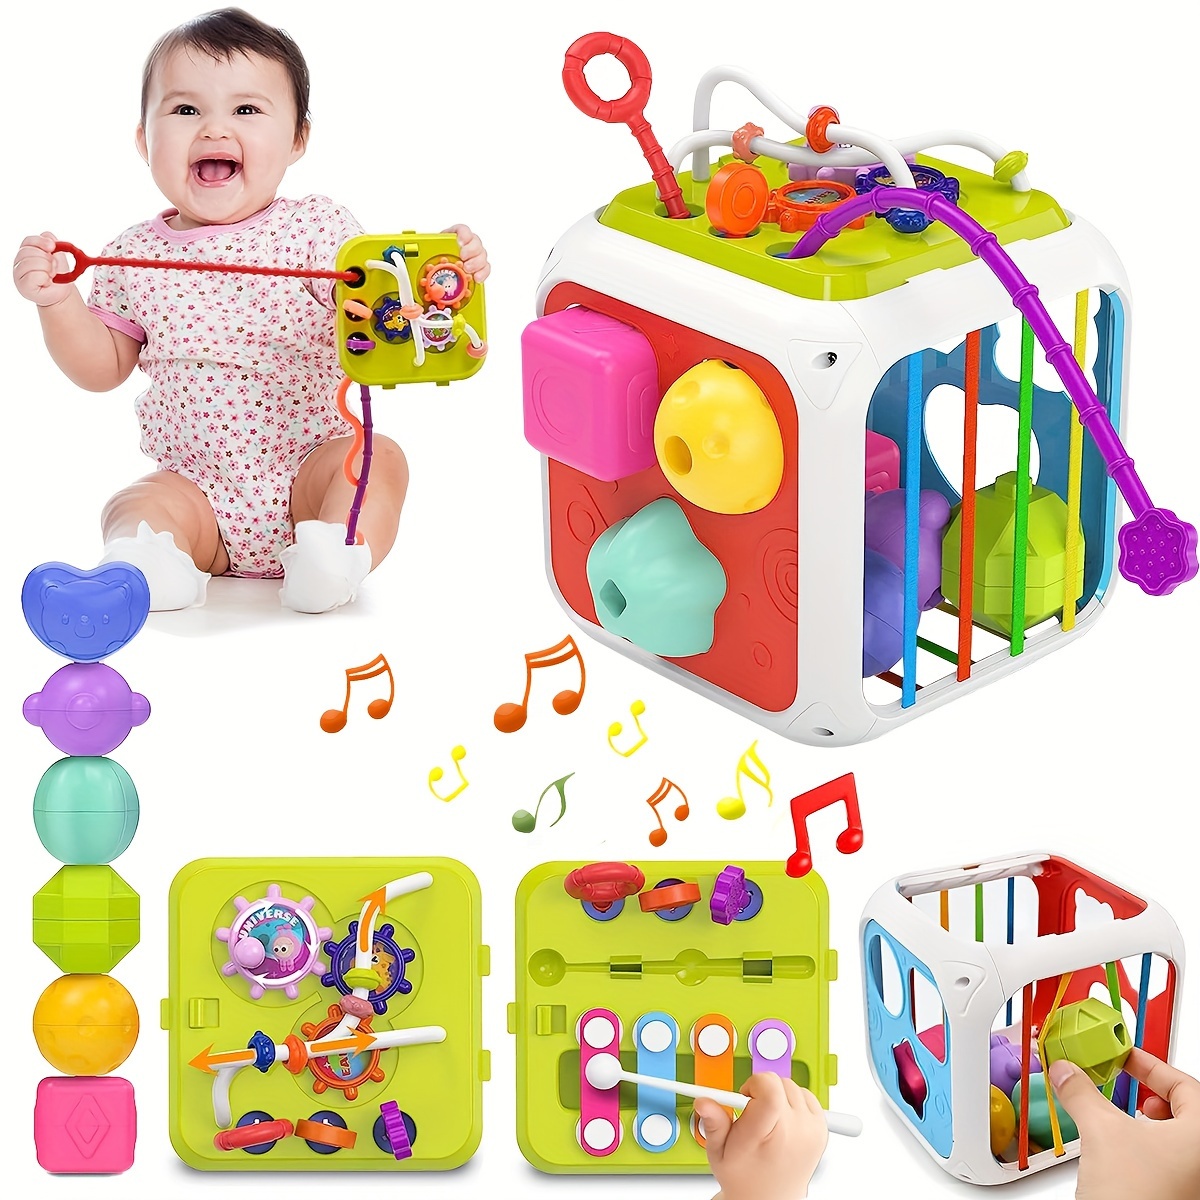 Juguetes para niñas de 1 año, regalo de cumpleaños, juguetes Montessori  para niños pequeños de 1 a 2 años con sonido/luces/música/bloques/animales  6